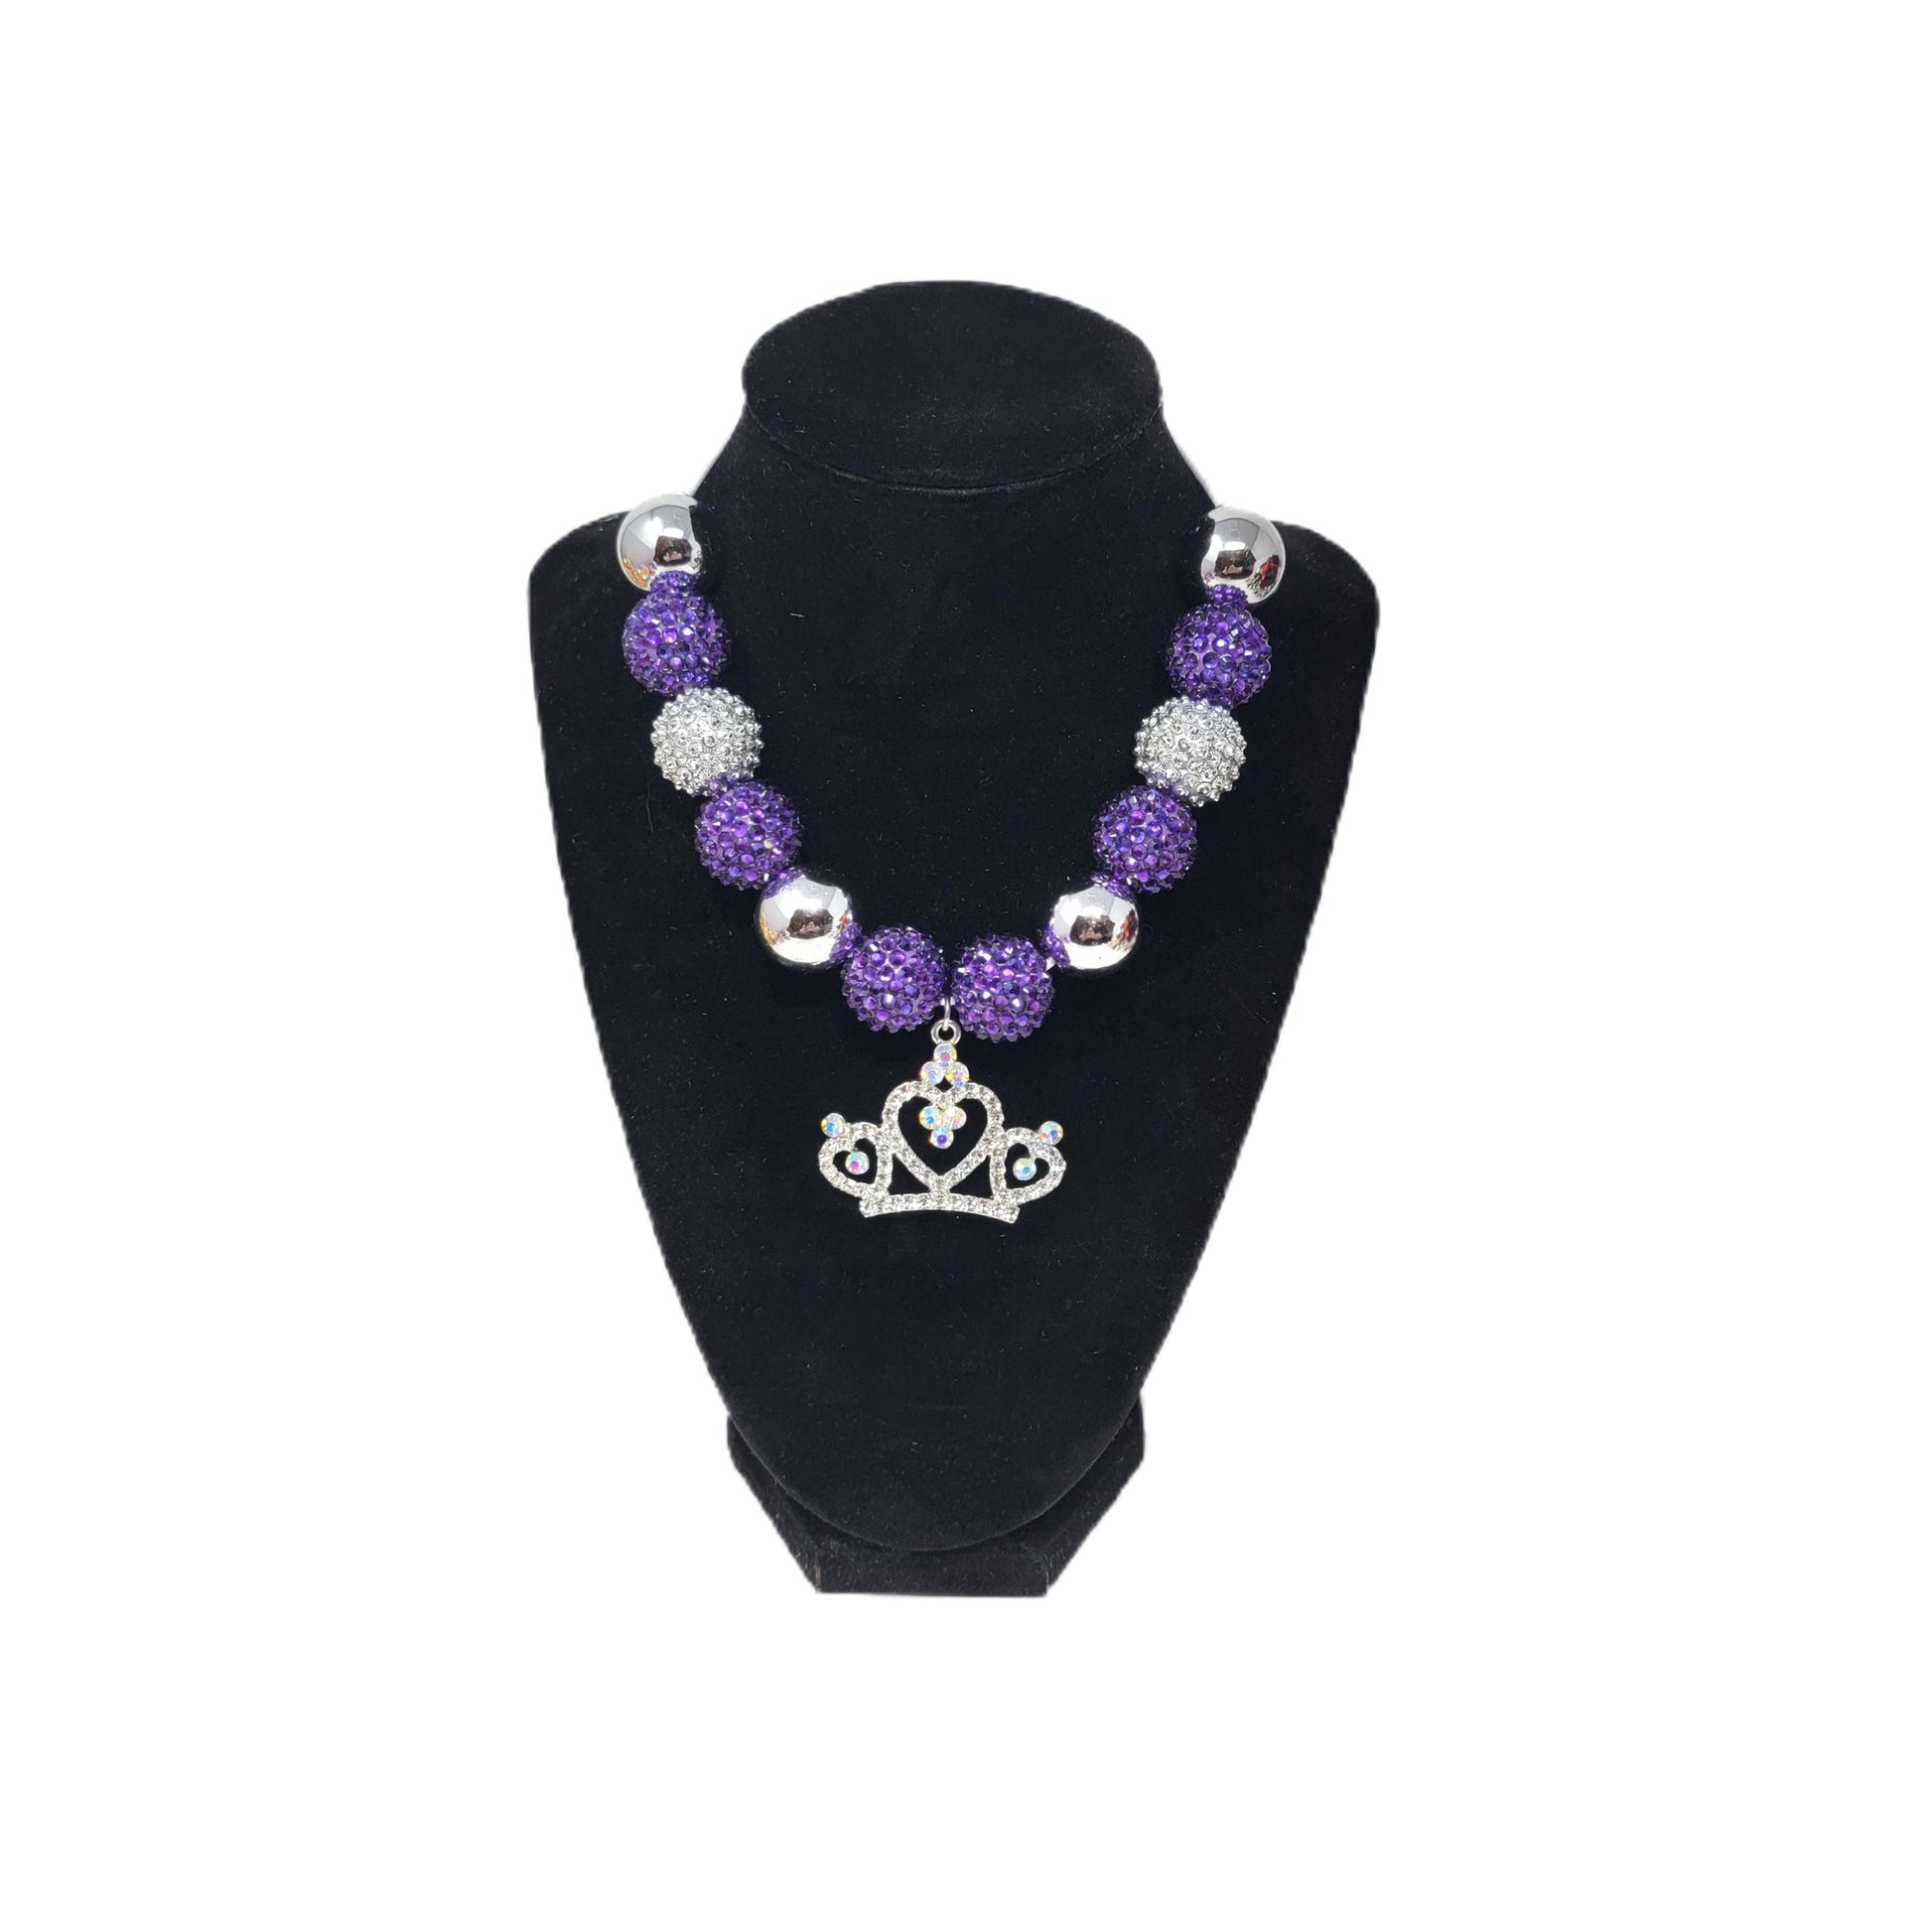 Purple & Silver Bubblegum Necklace with Crown Pendant